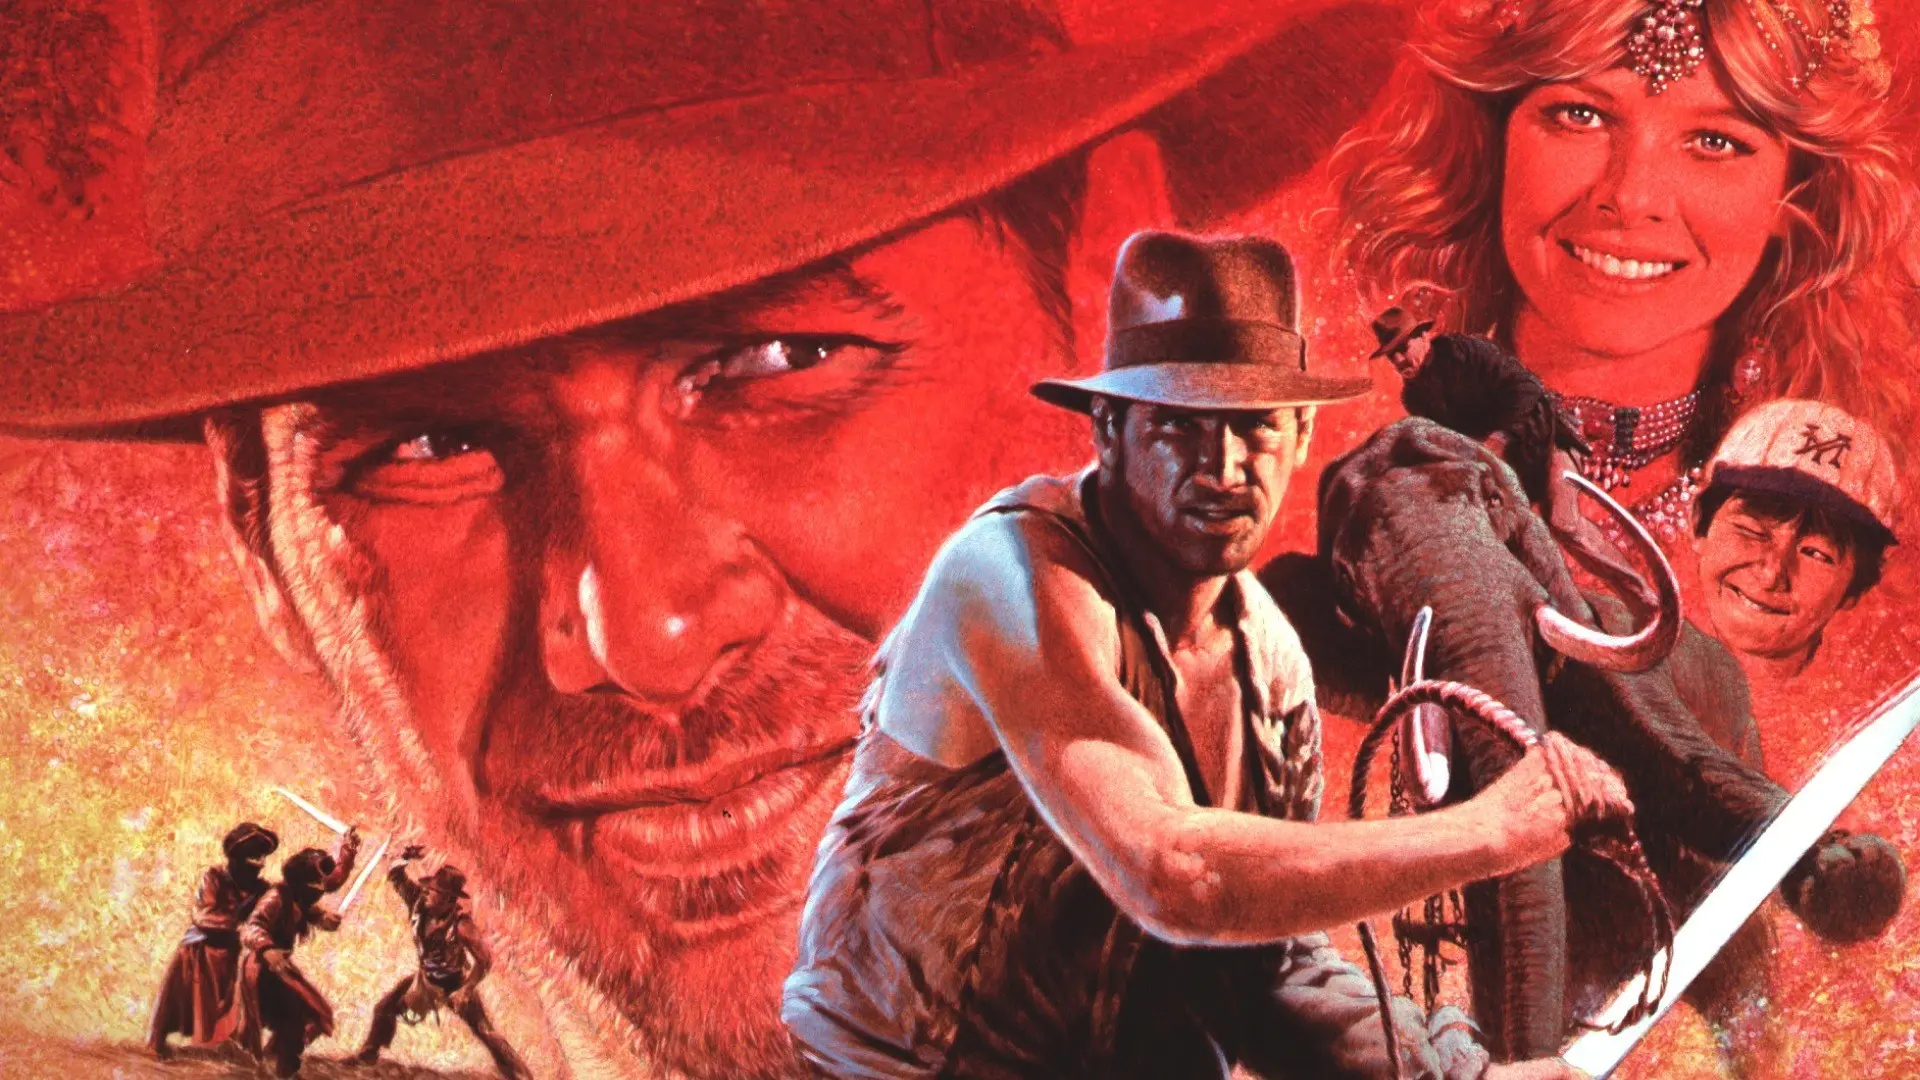 Retro recenze: Indiana Jones a chrám zkázy - Unikátní prototyp čistokrevné hollywoodské zábavy, která převrací kulturní mýty